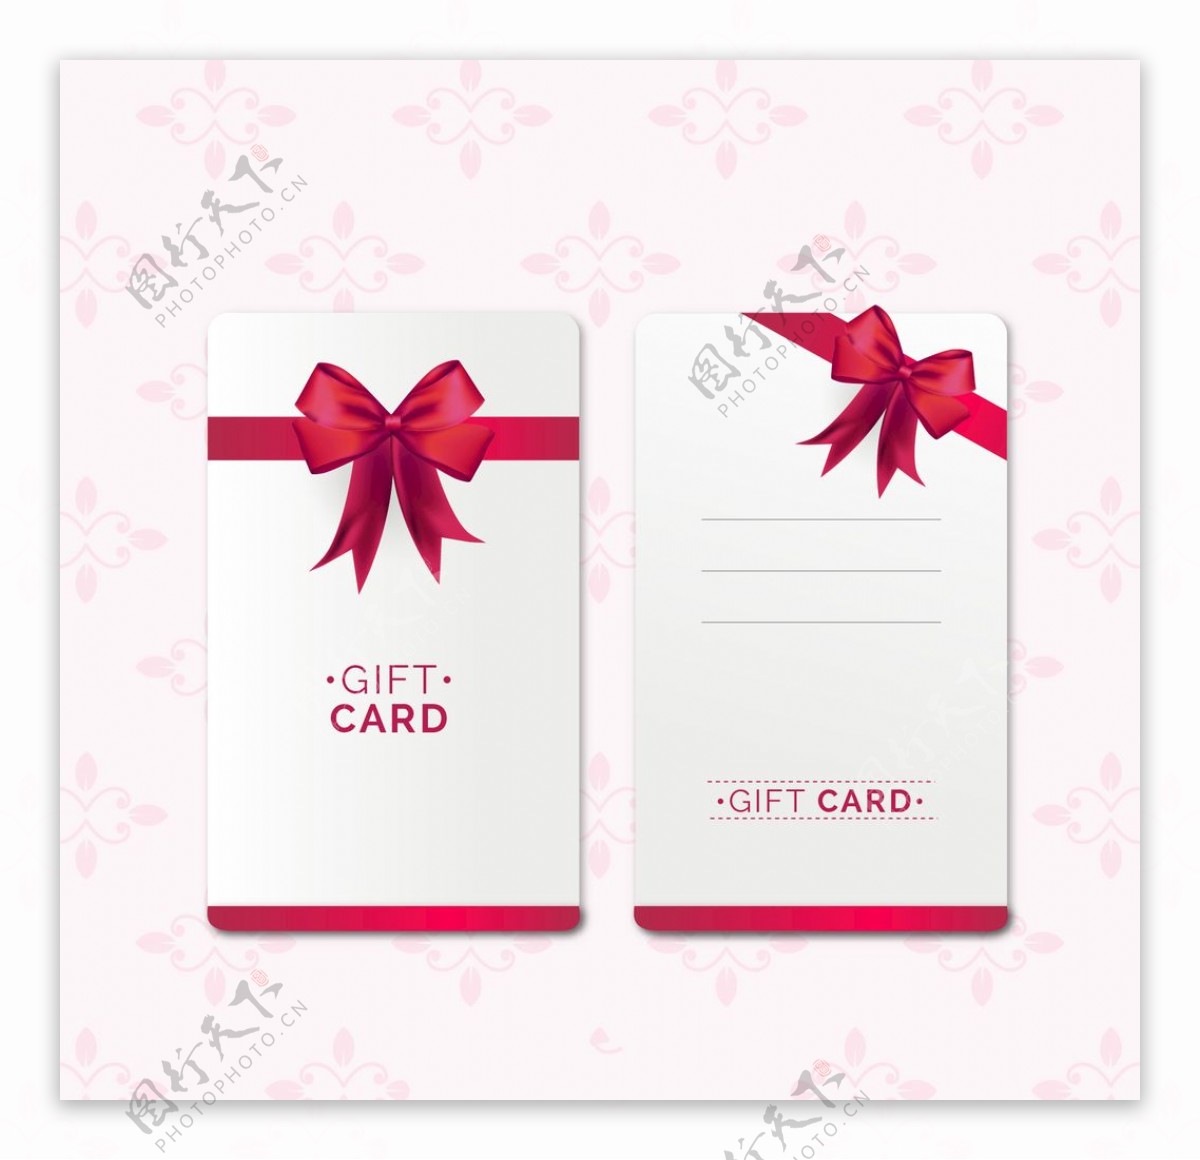 红丝带礼品卡模板